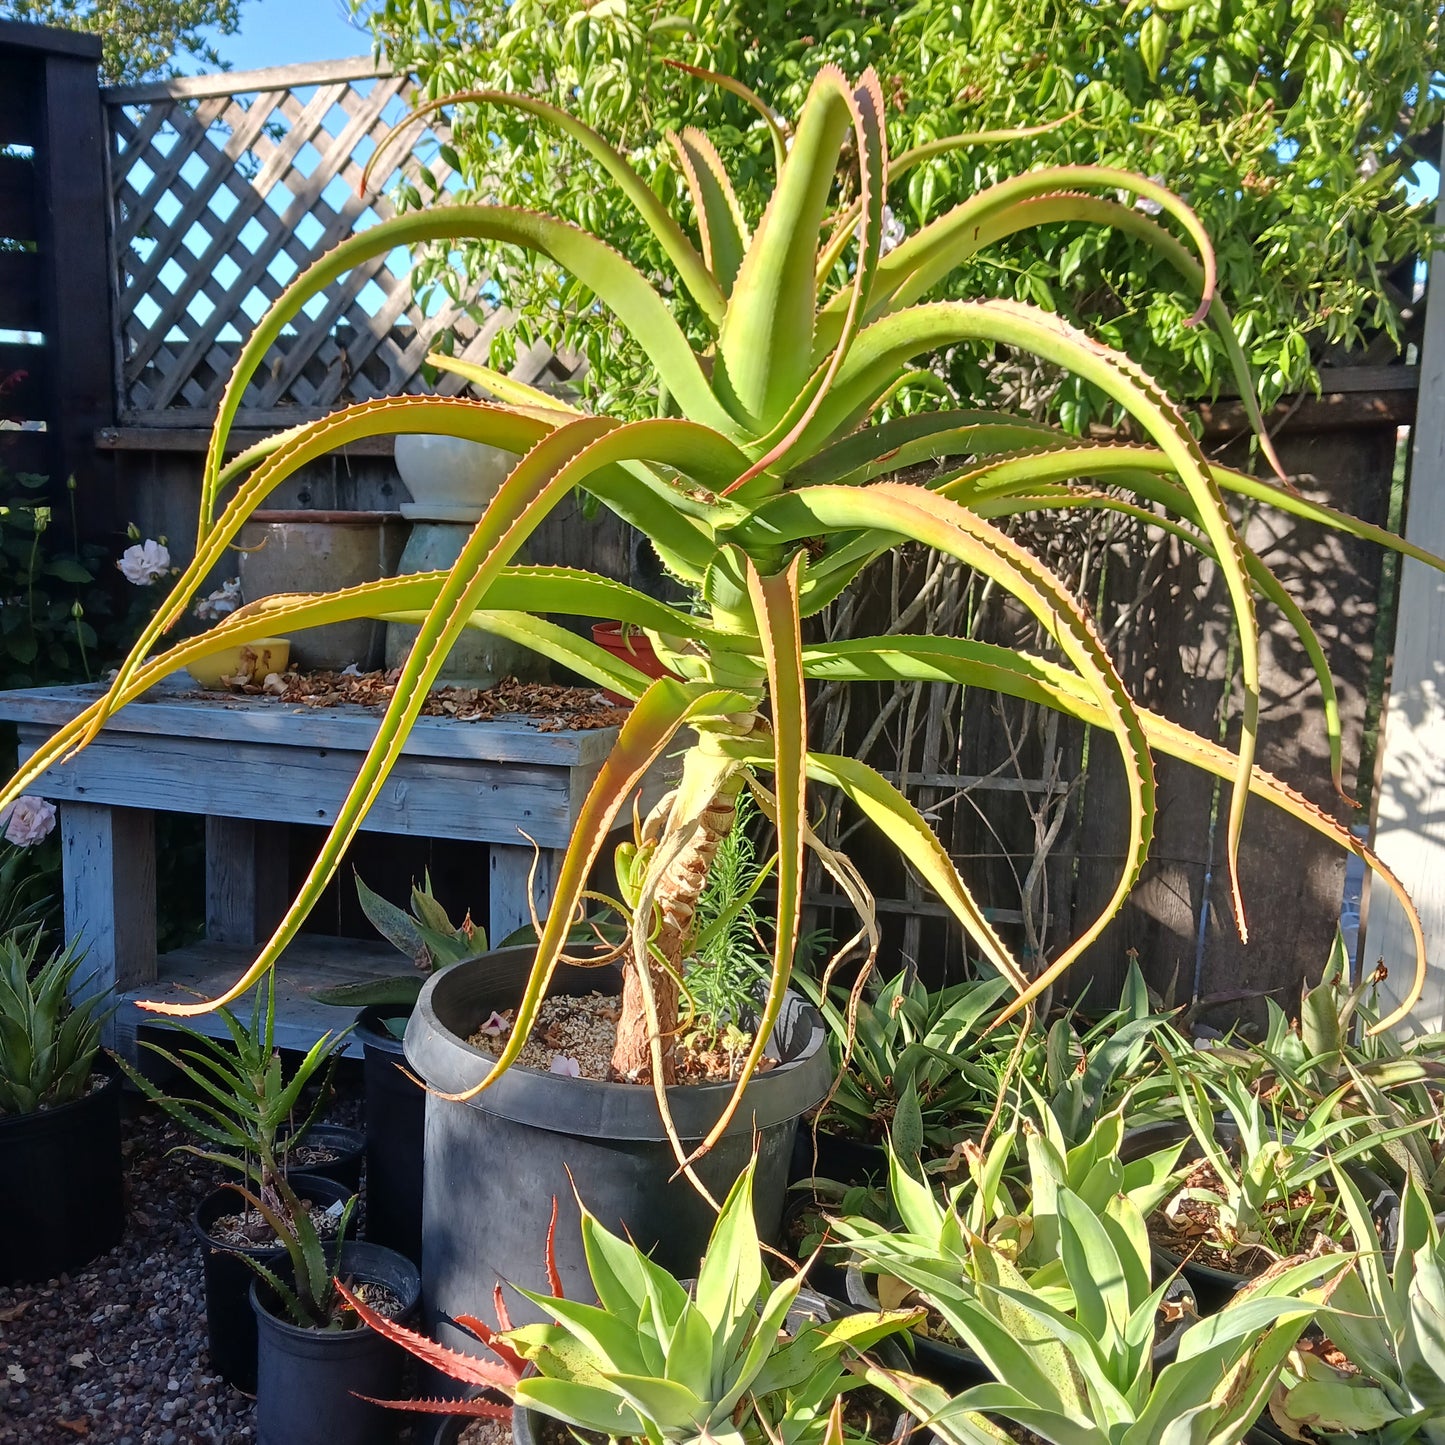 Aloe helenae - 1ga